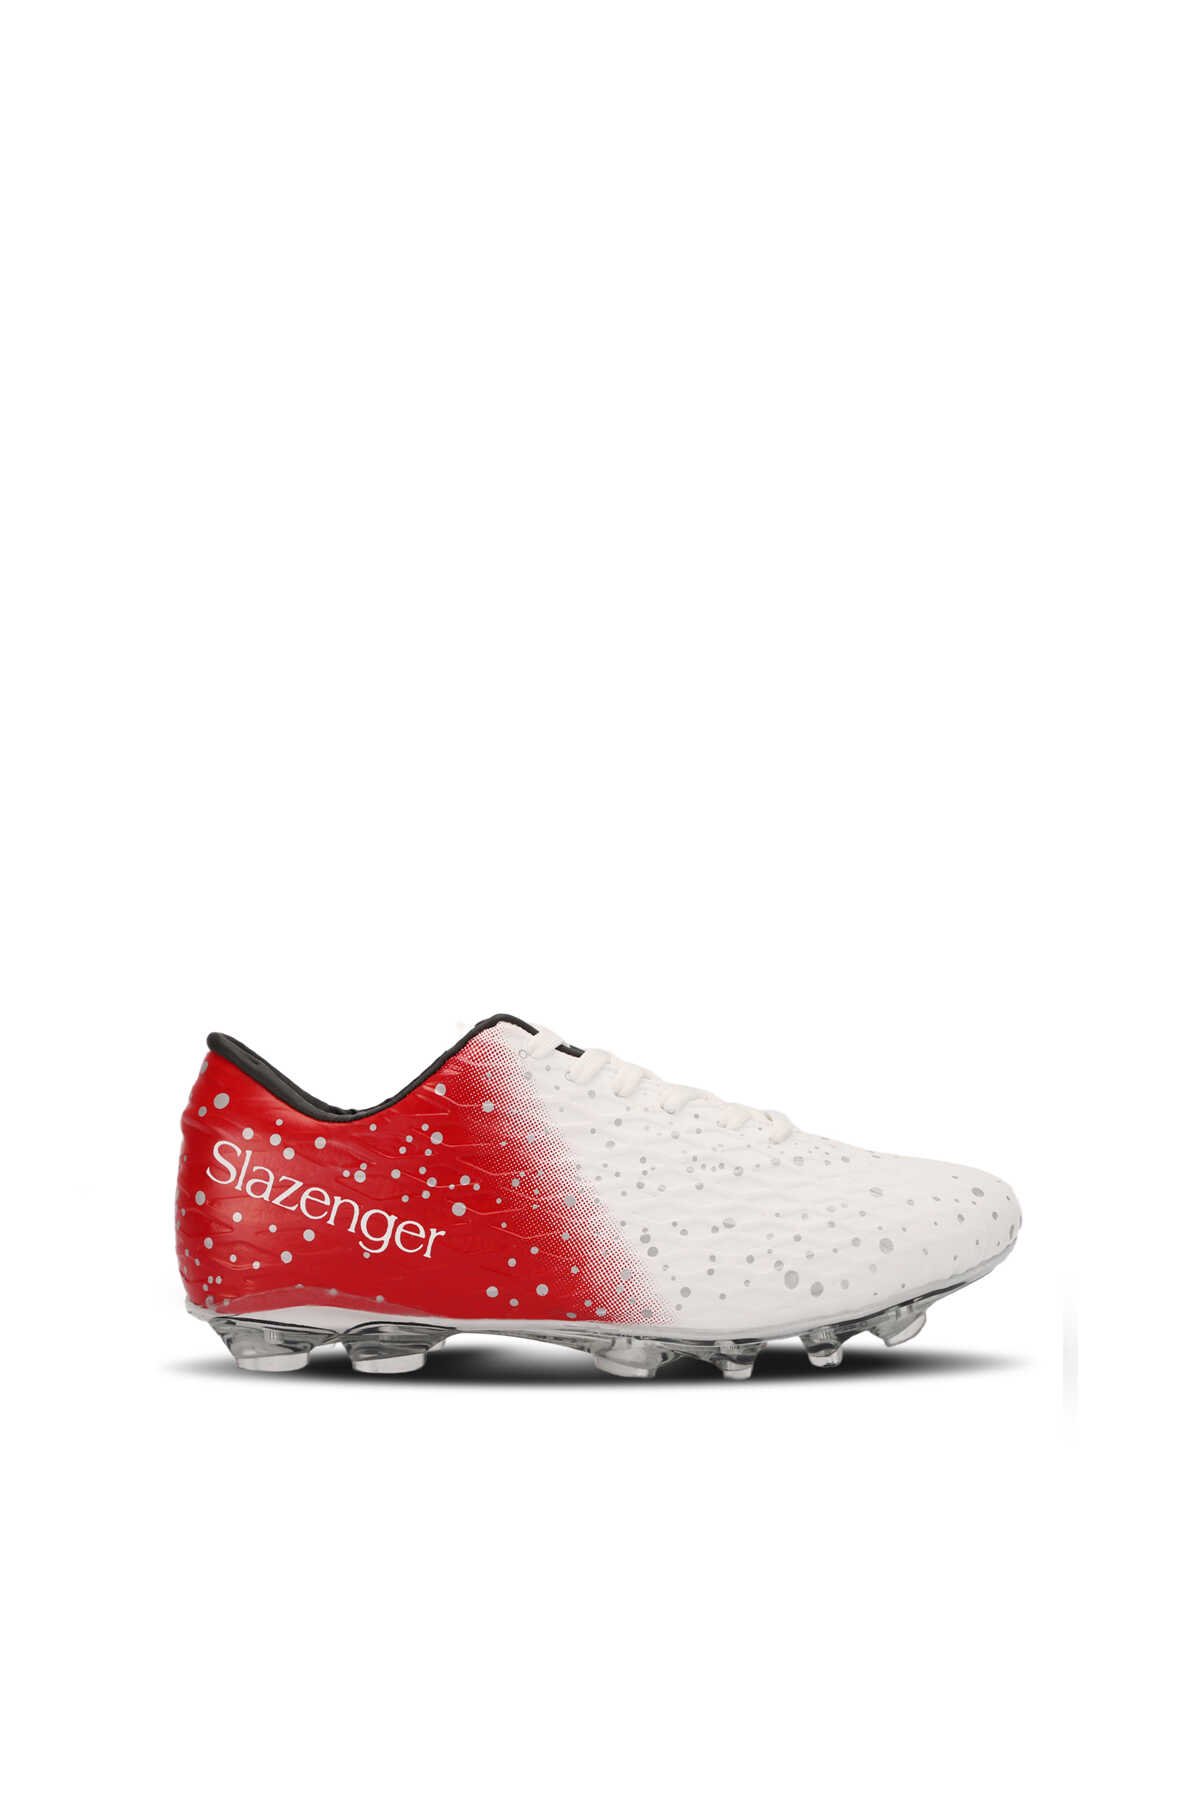 Slazenger - HANIA KRP Futbol Erkek Çocuk Krampon Ayakkabı Beyaz / Kırmızı